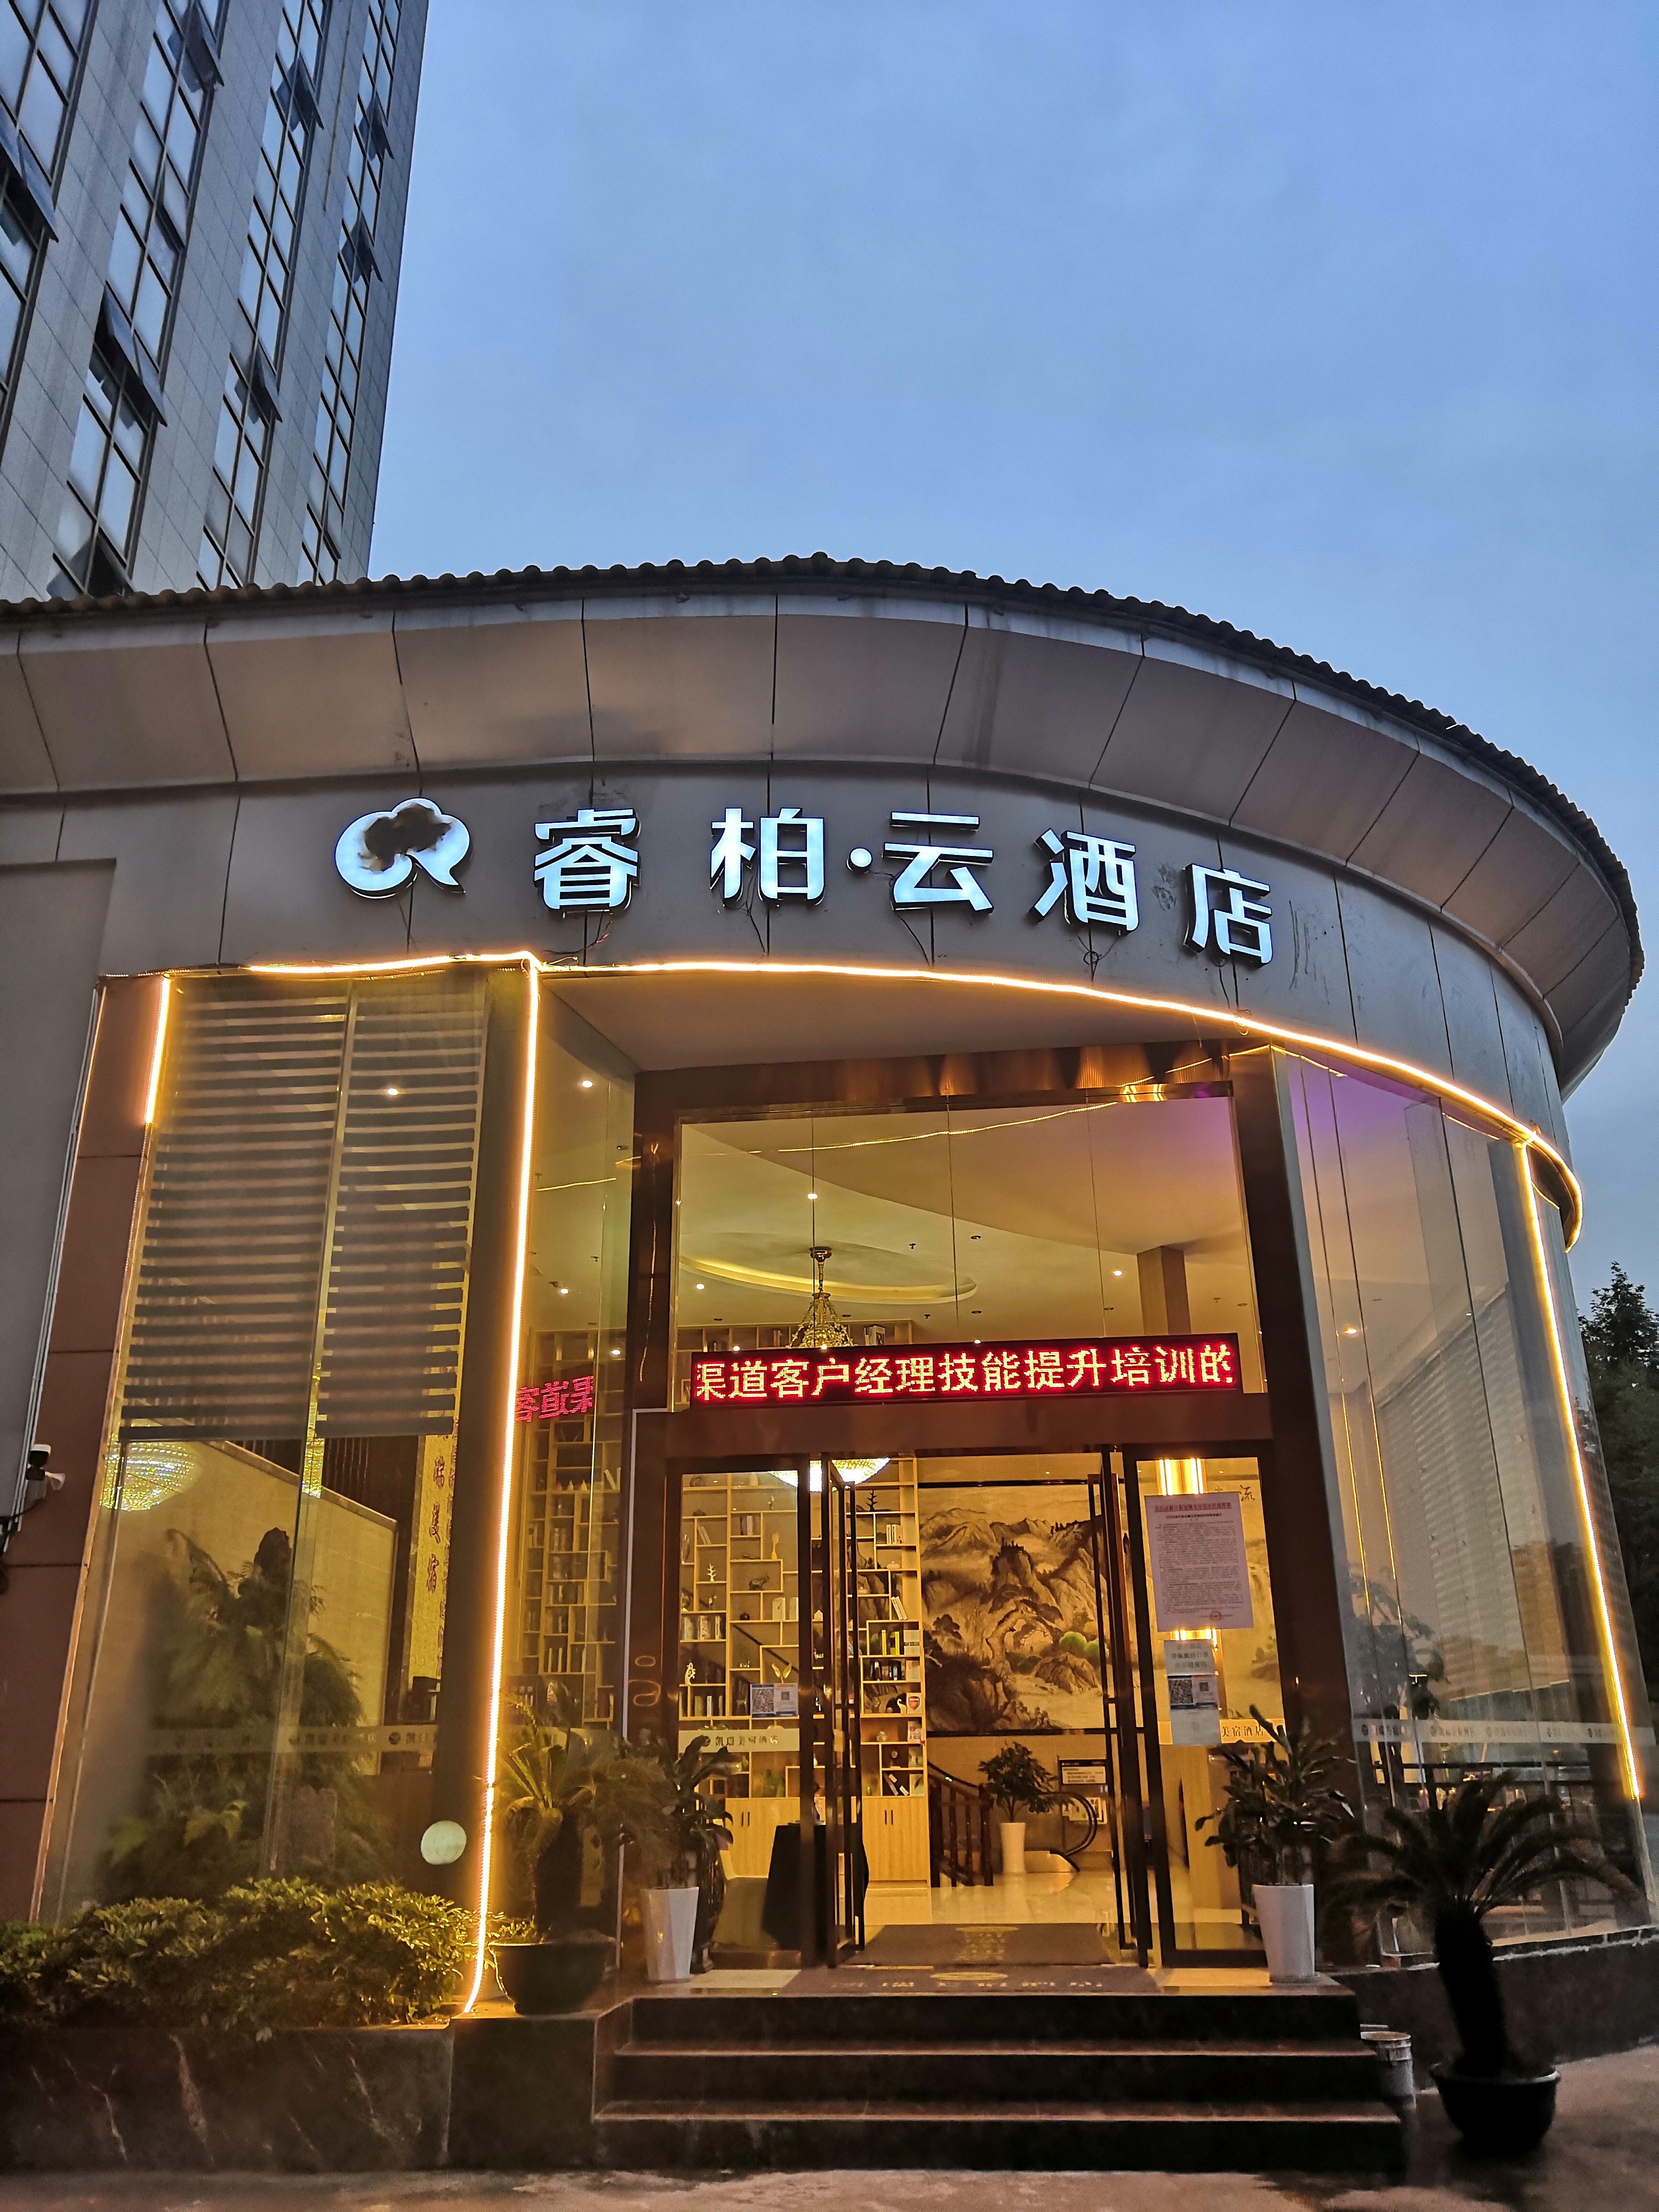 睿柏云酒店logo图片